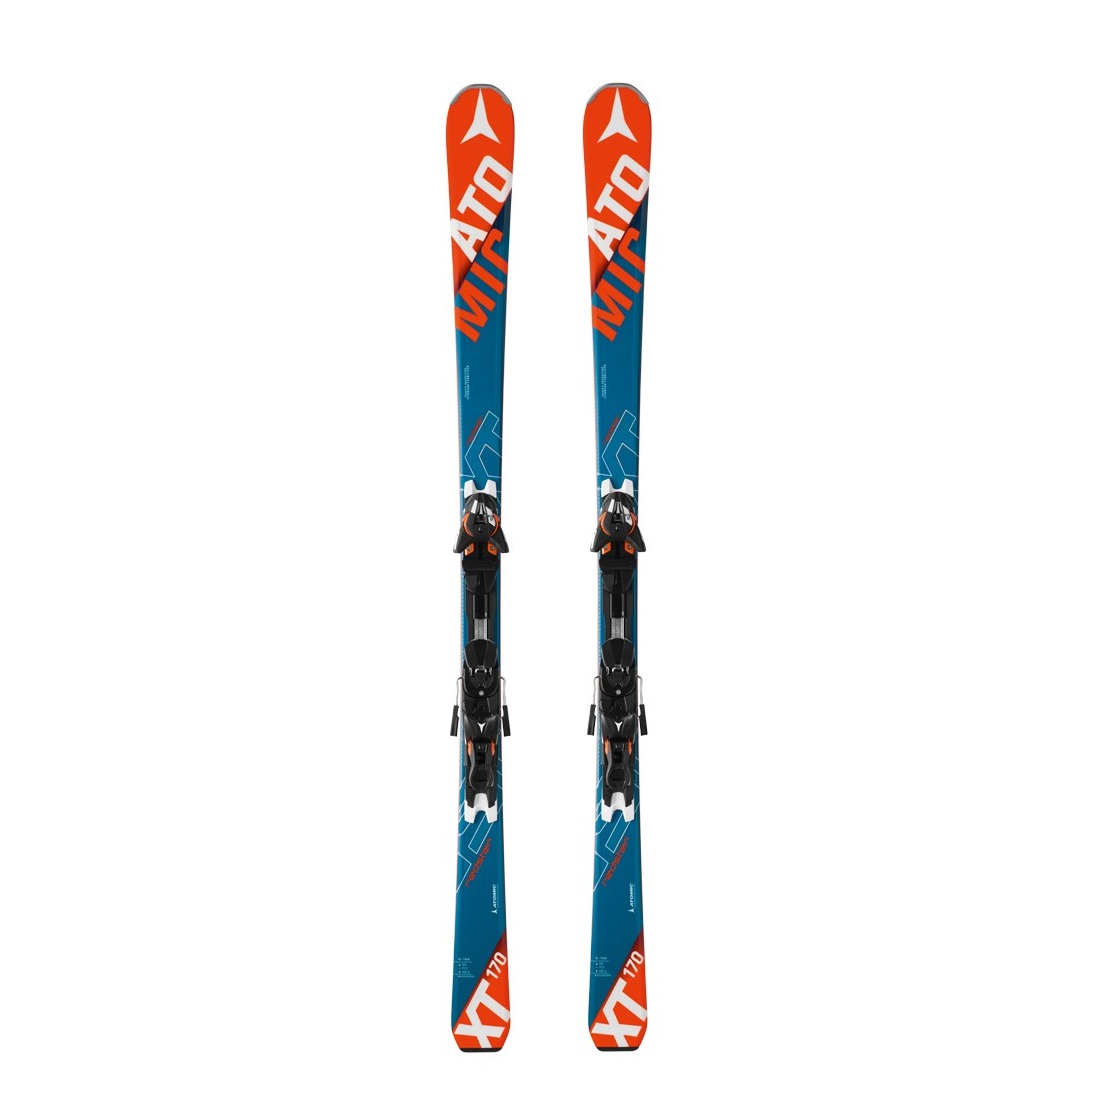 Ski | Atomic Redster XT-X + 12 Ski equipment